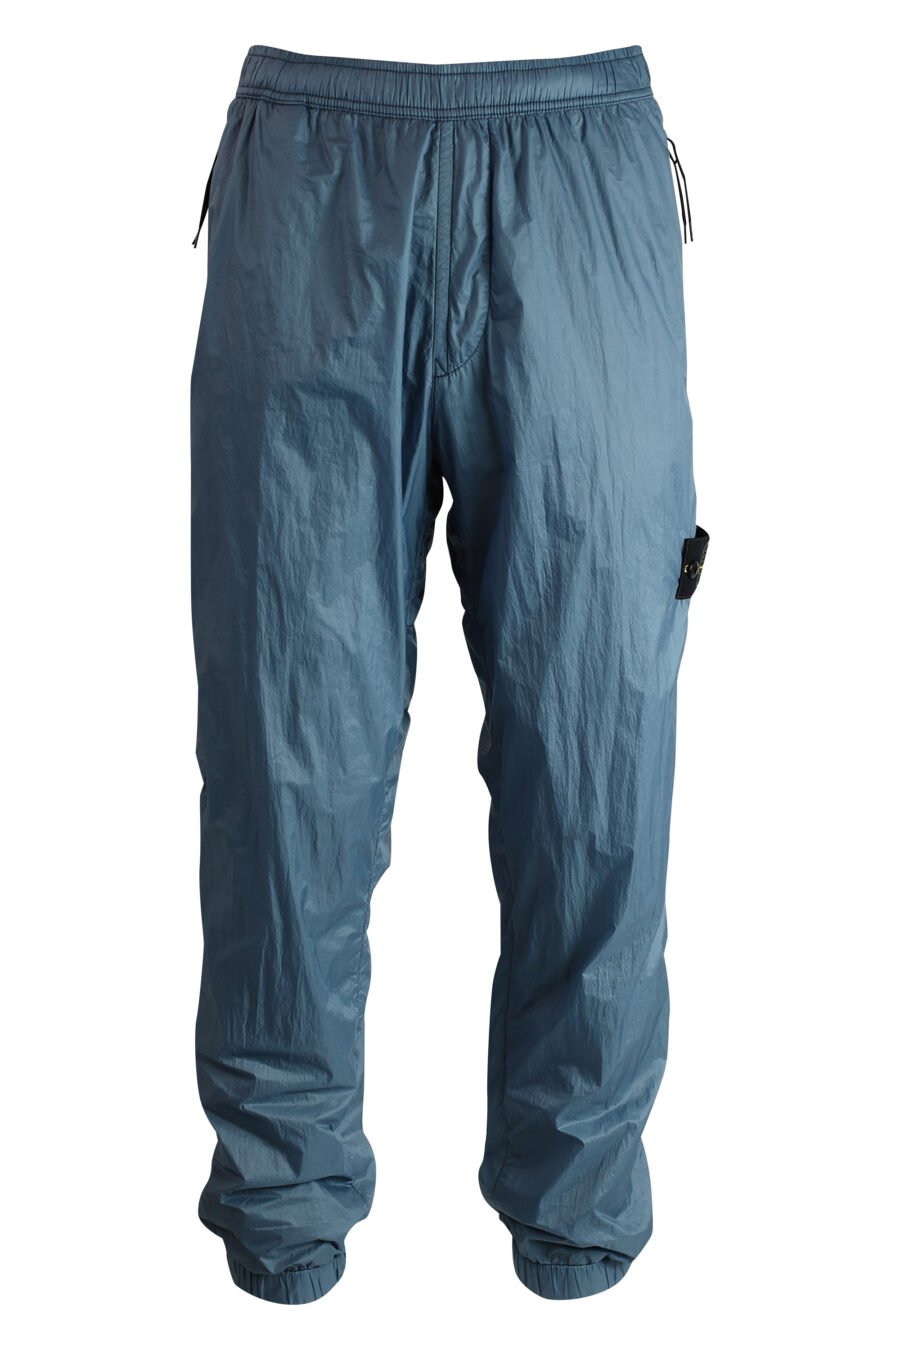 Pantalón azul grisáceo con parche - 8052572559723